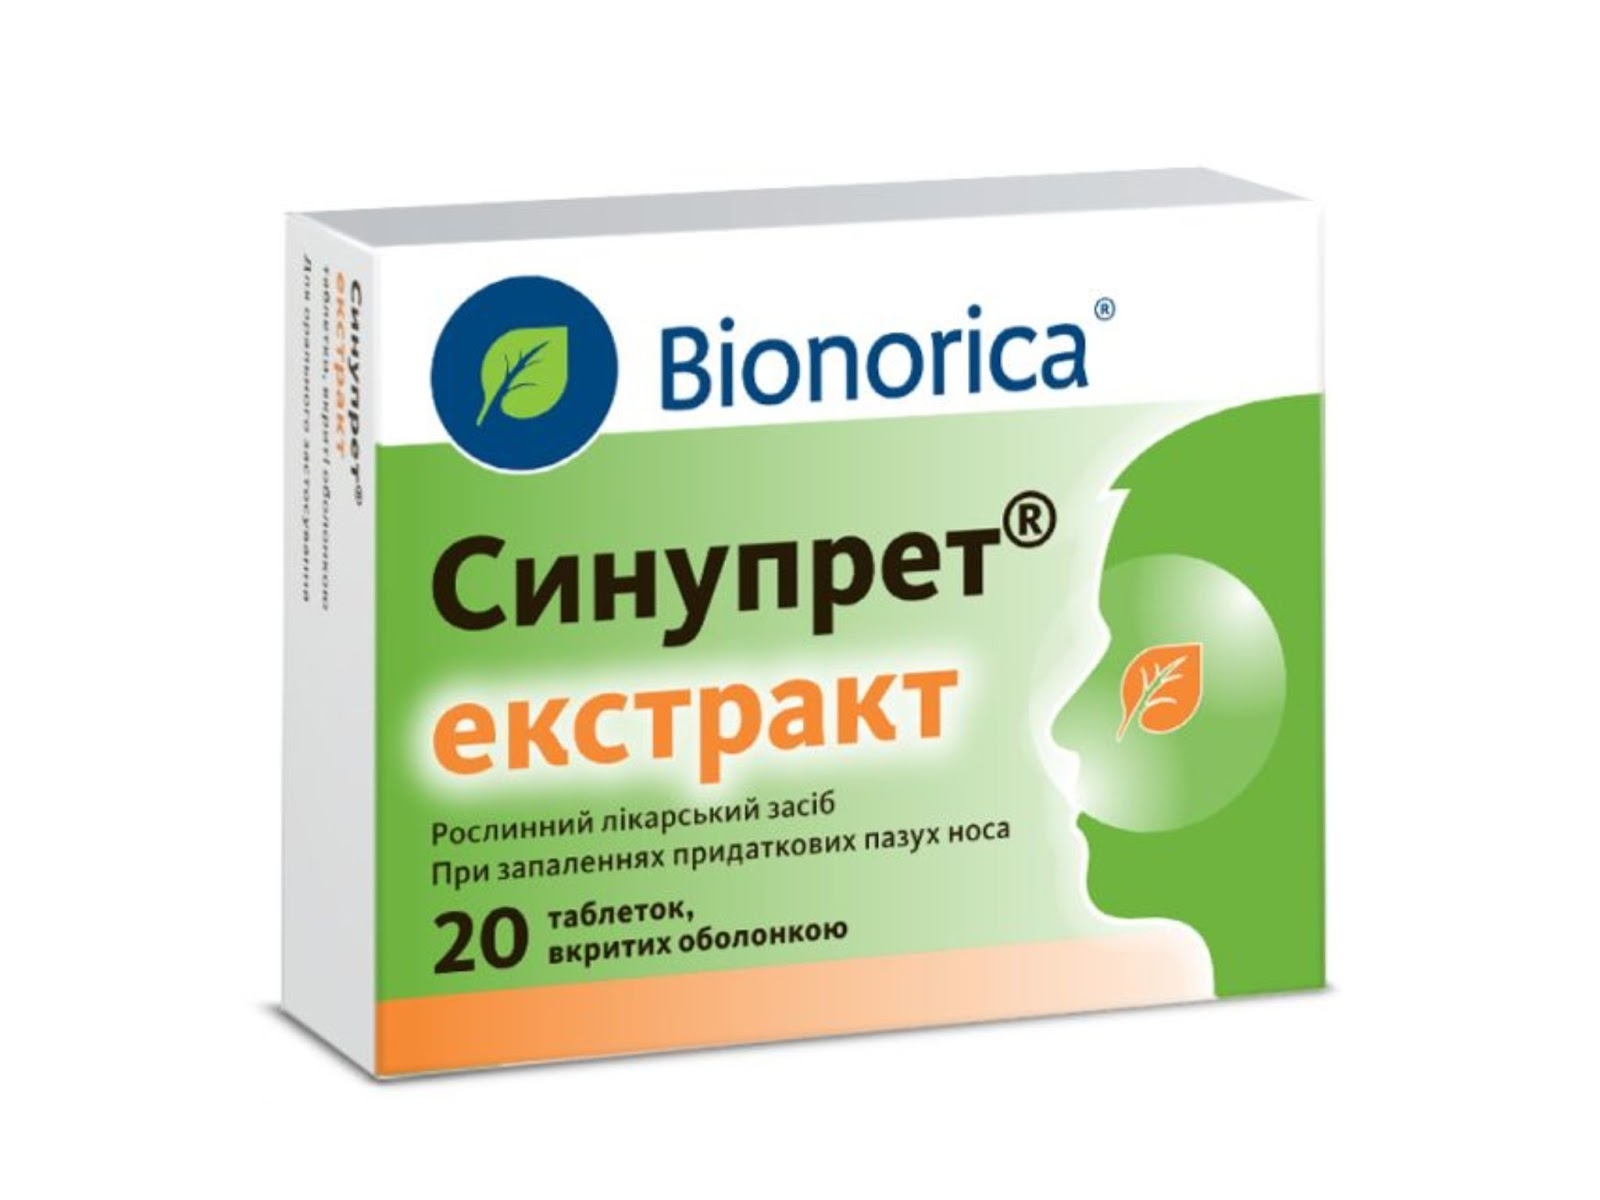 Синупрет екстракт — є найбільш потужним засобом лікування нежитю з усіх препаратів компанії "Біонорика".